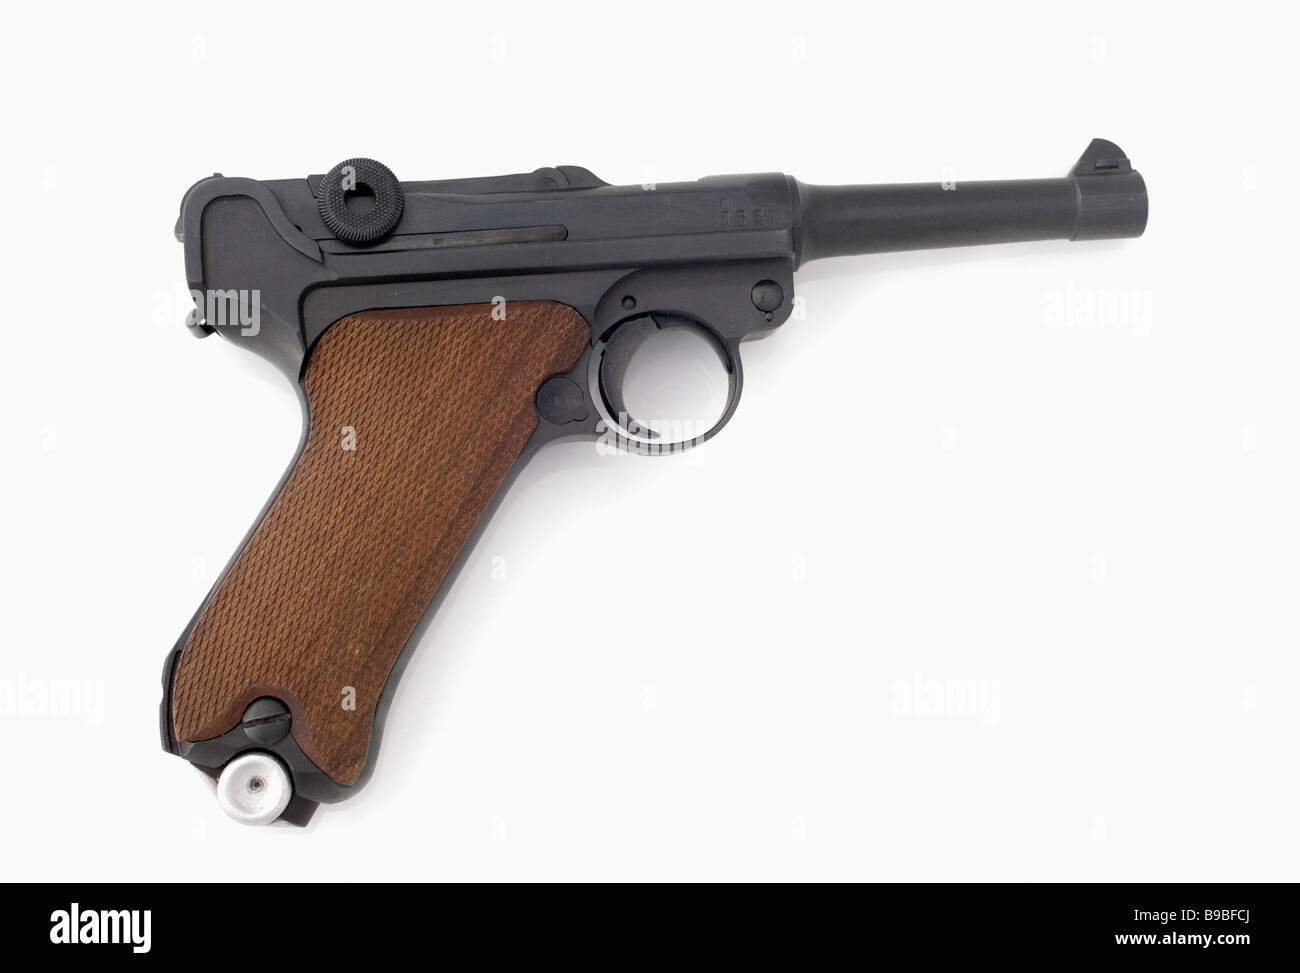 A Lugar  handgun Stock Photo